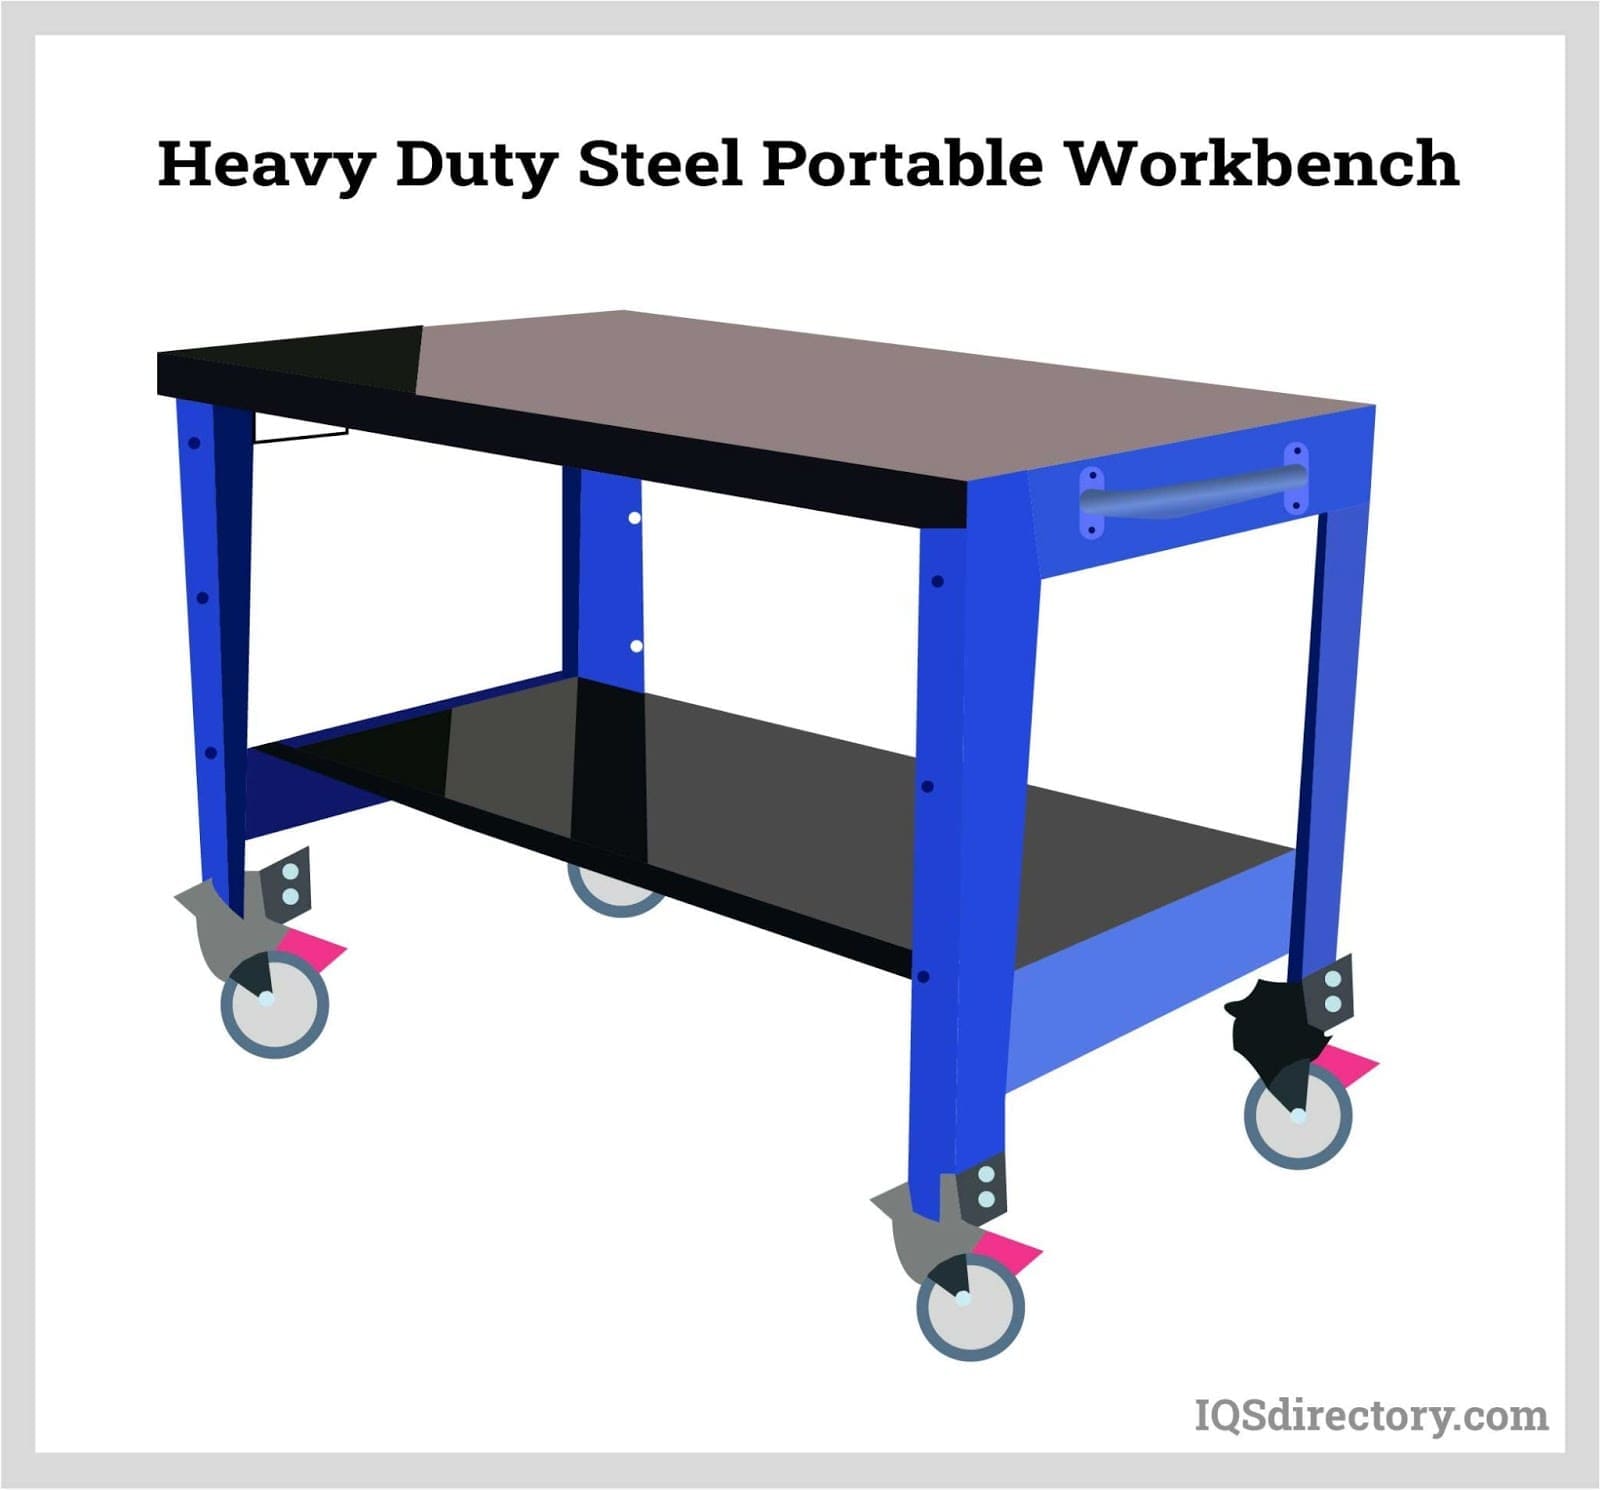 Heavy Duty Steel Portable Workbench